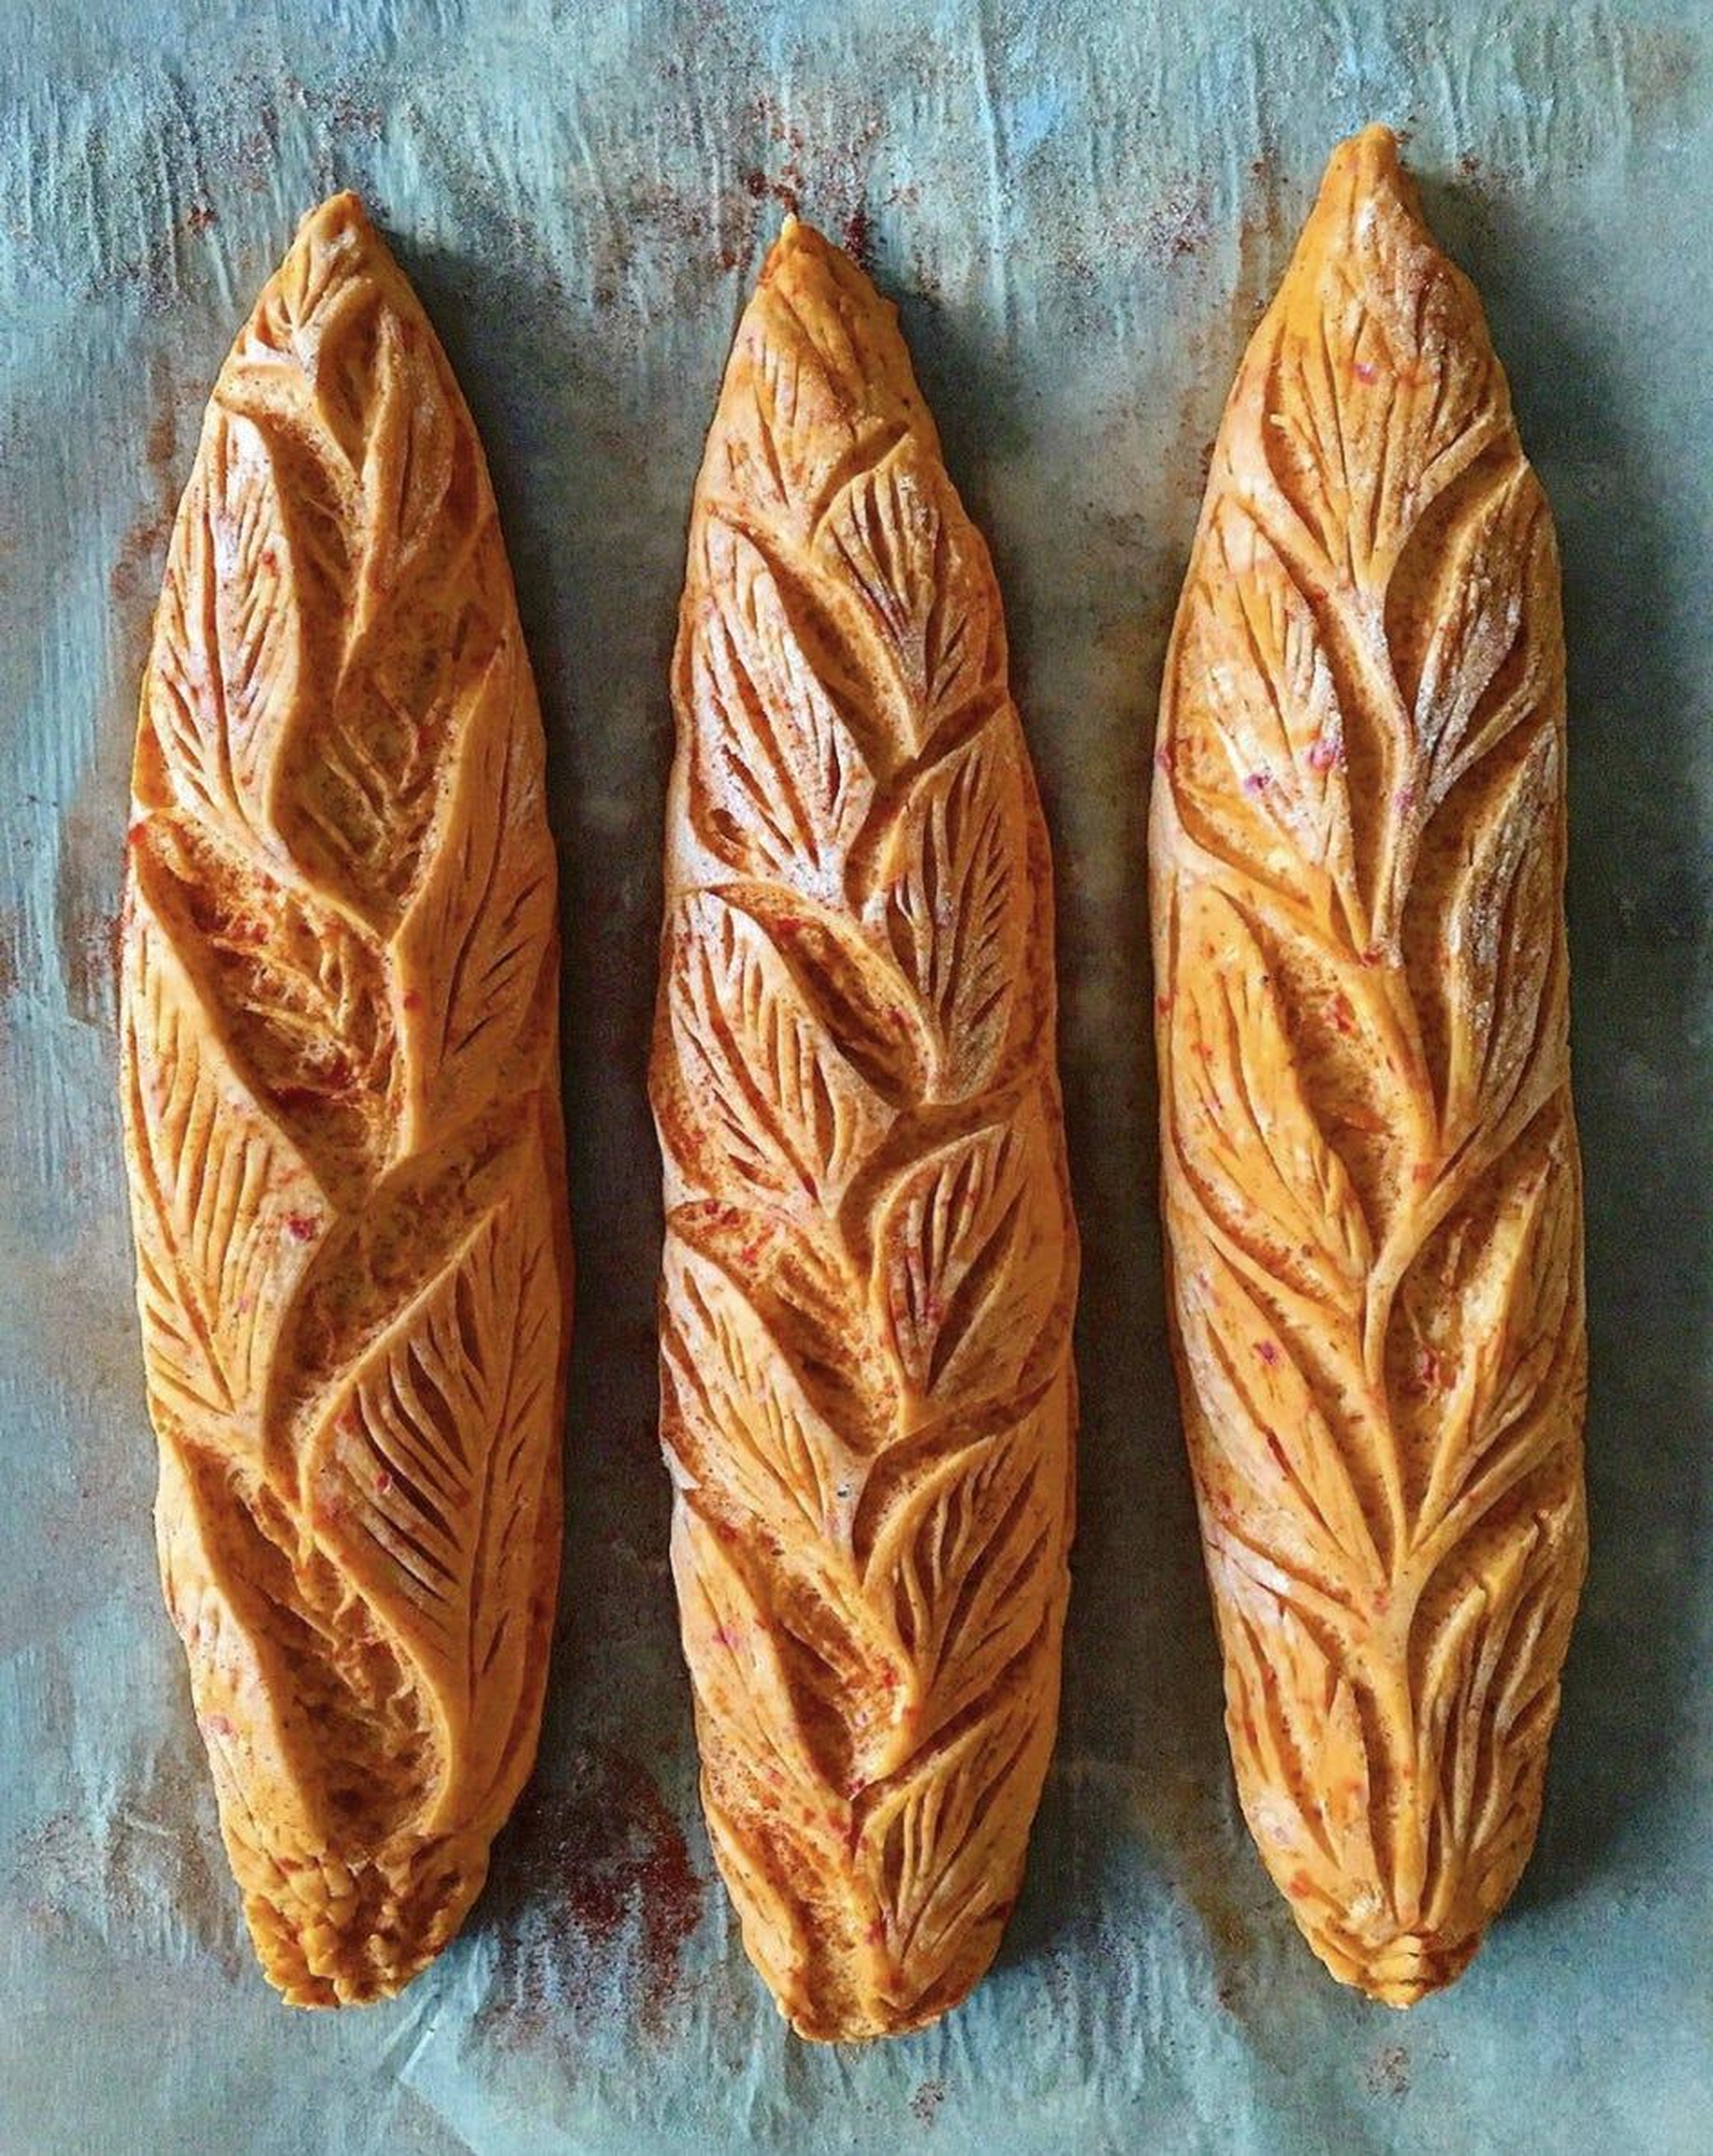 Page a menudo improvisa los diseños que hace en sus panes.